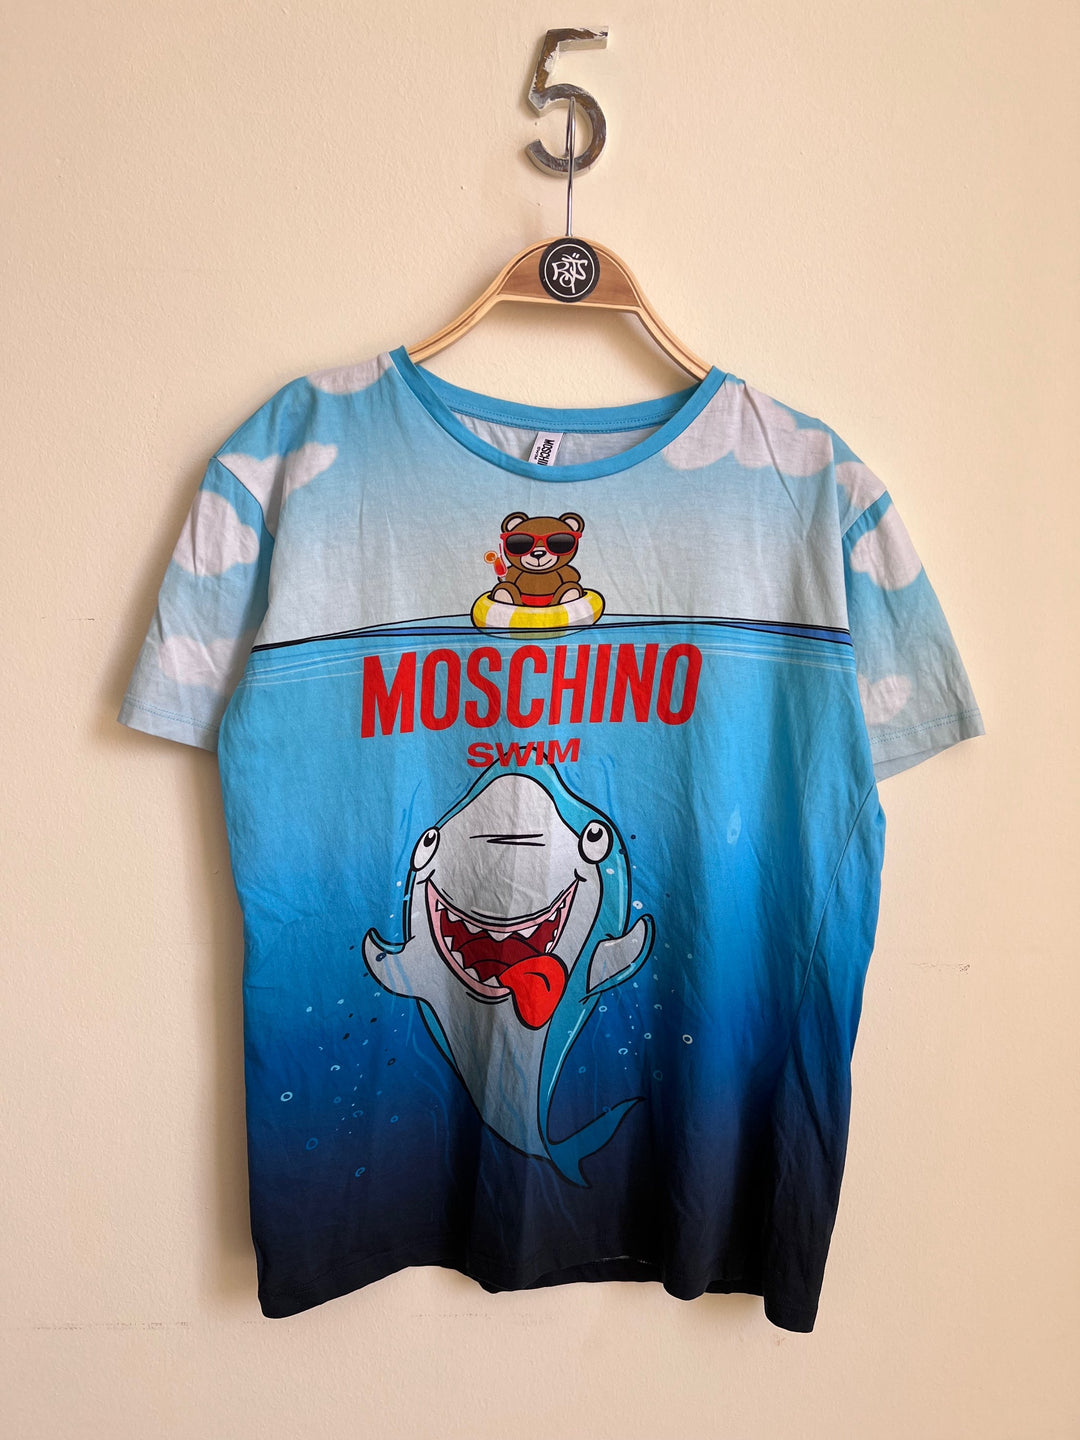 Moschino Swim T-Shirt Women's Small